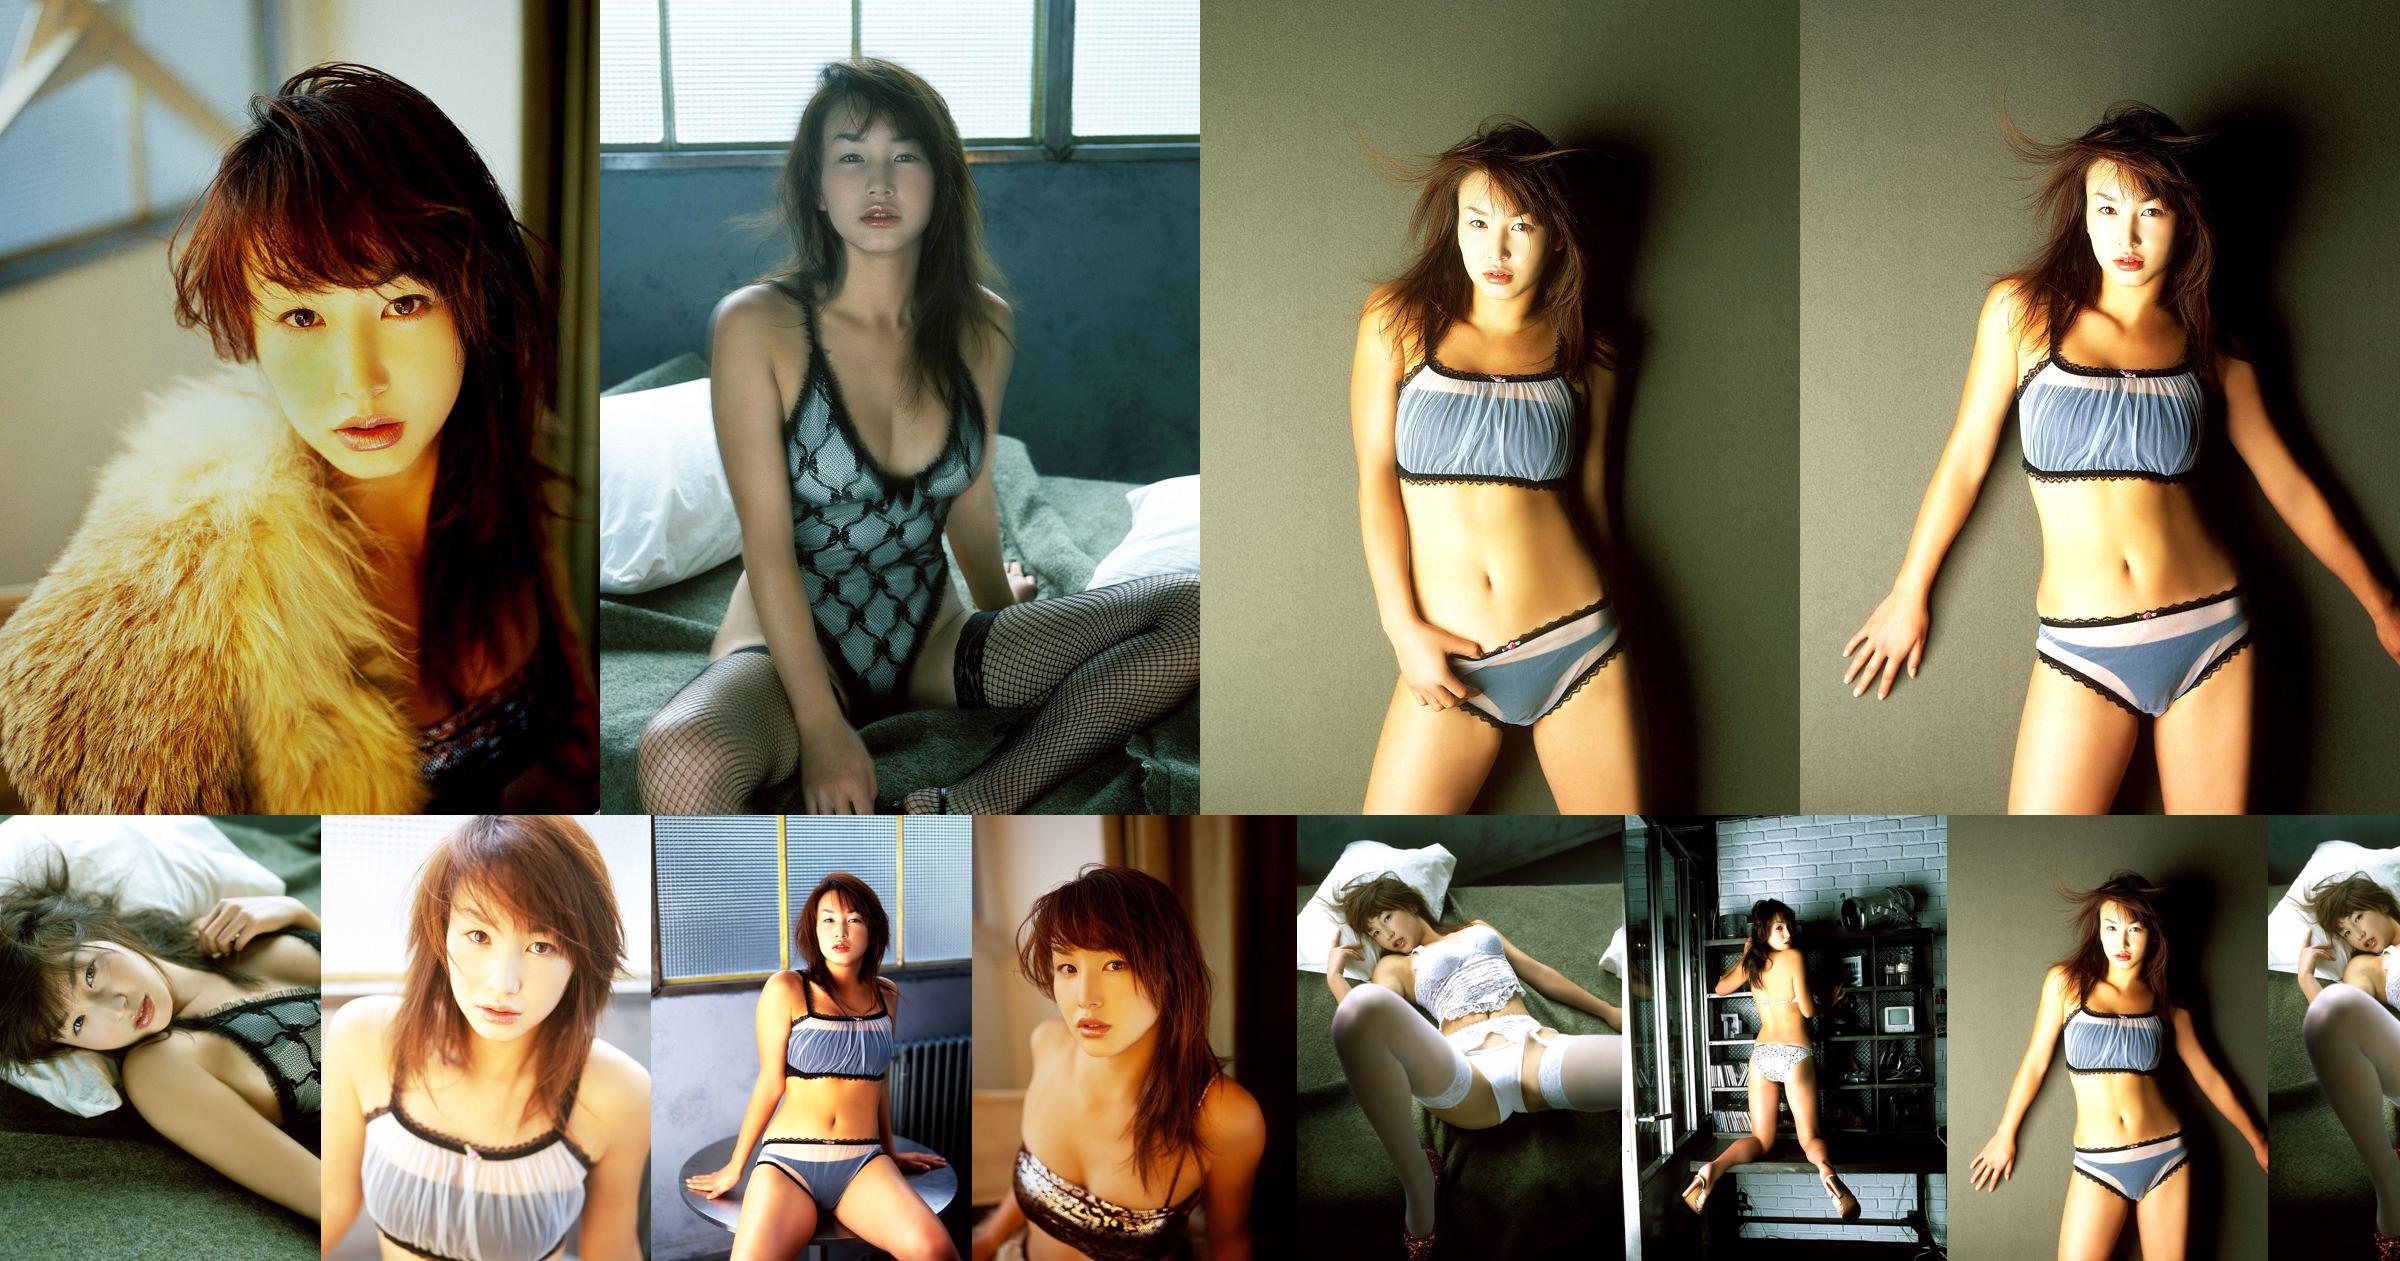 [X-City] Dokkiri Queen No.016 Momo Nakamura / Momo Nakamura Profile No.394344 Page 1